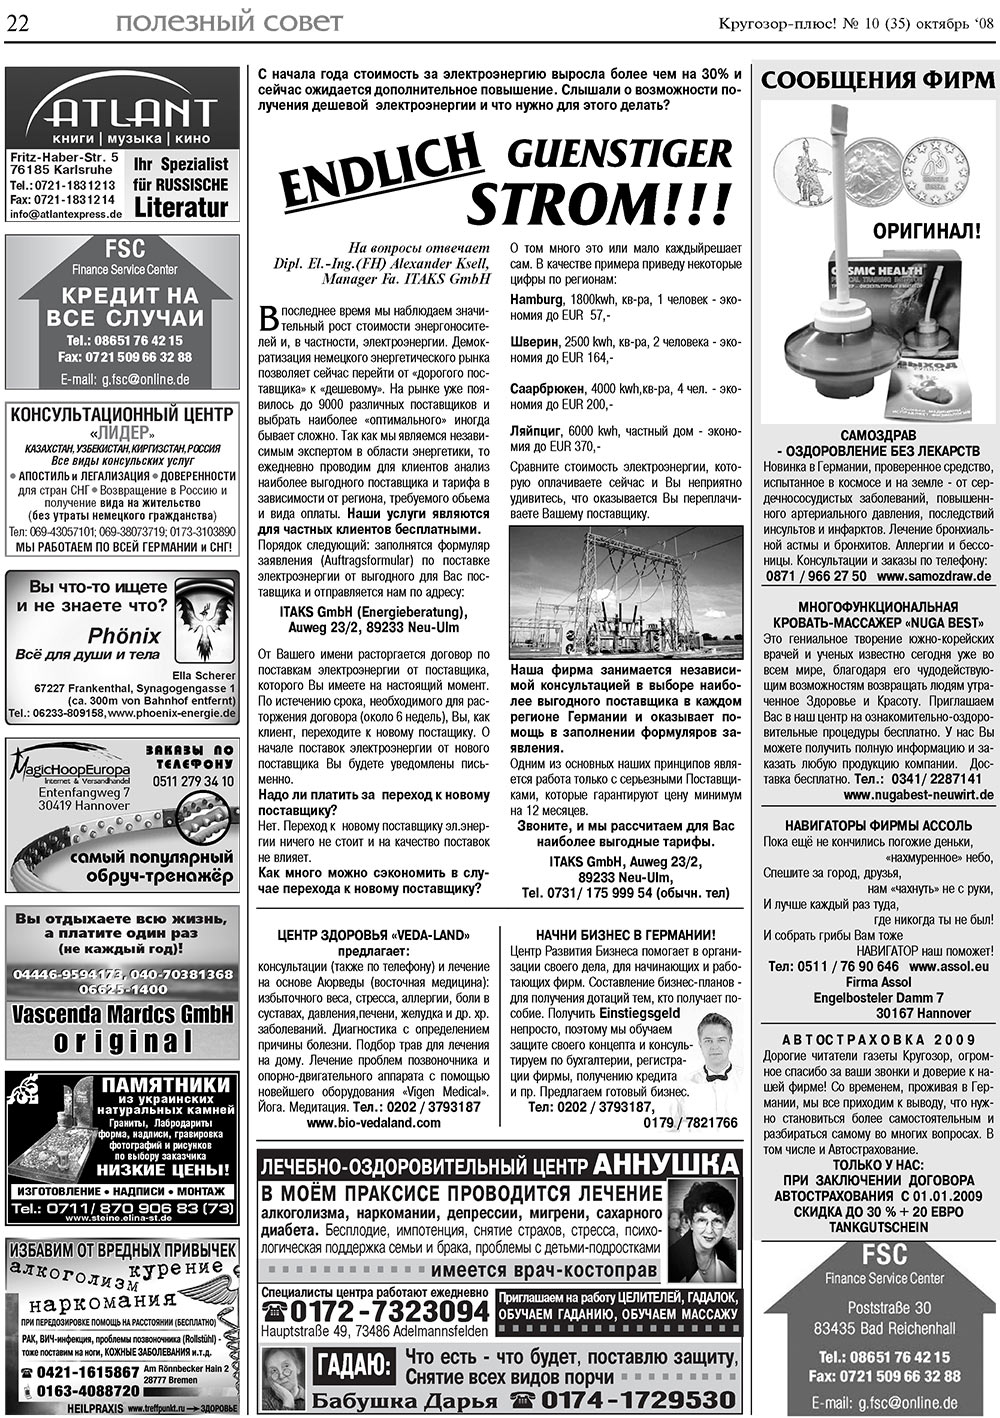 Кругозор плюс!, газета. 2008 №10 стр.22